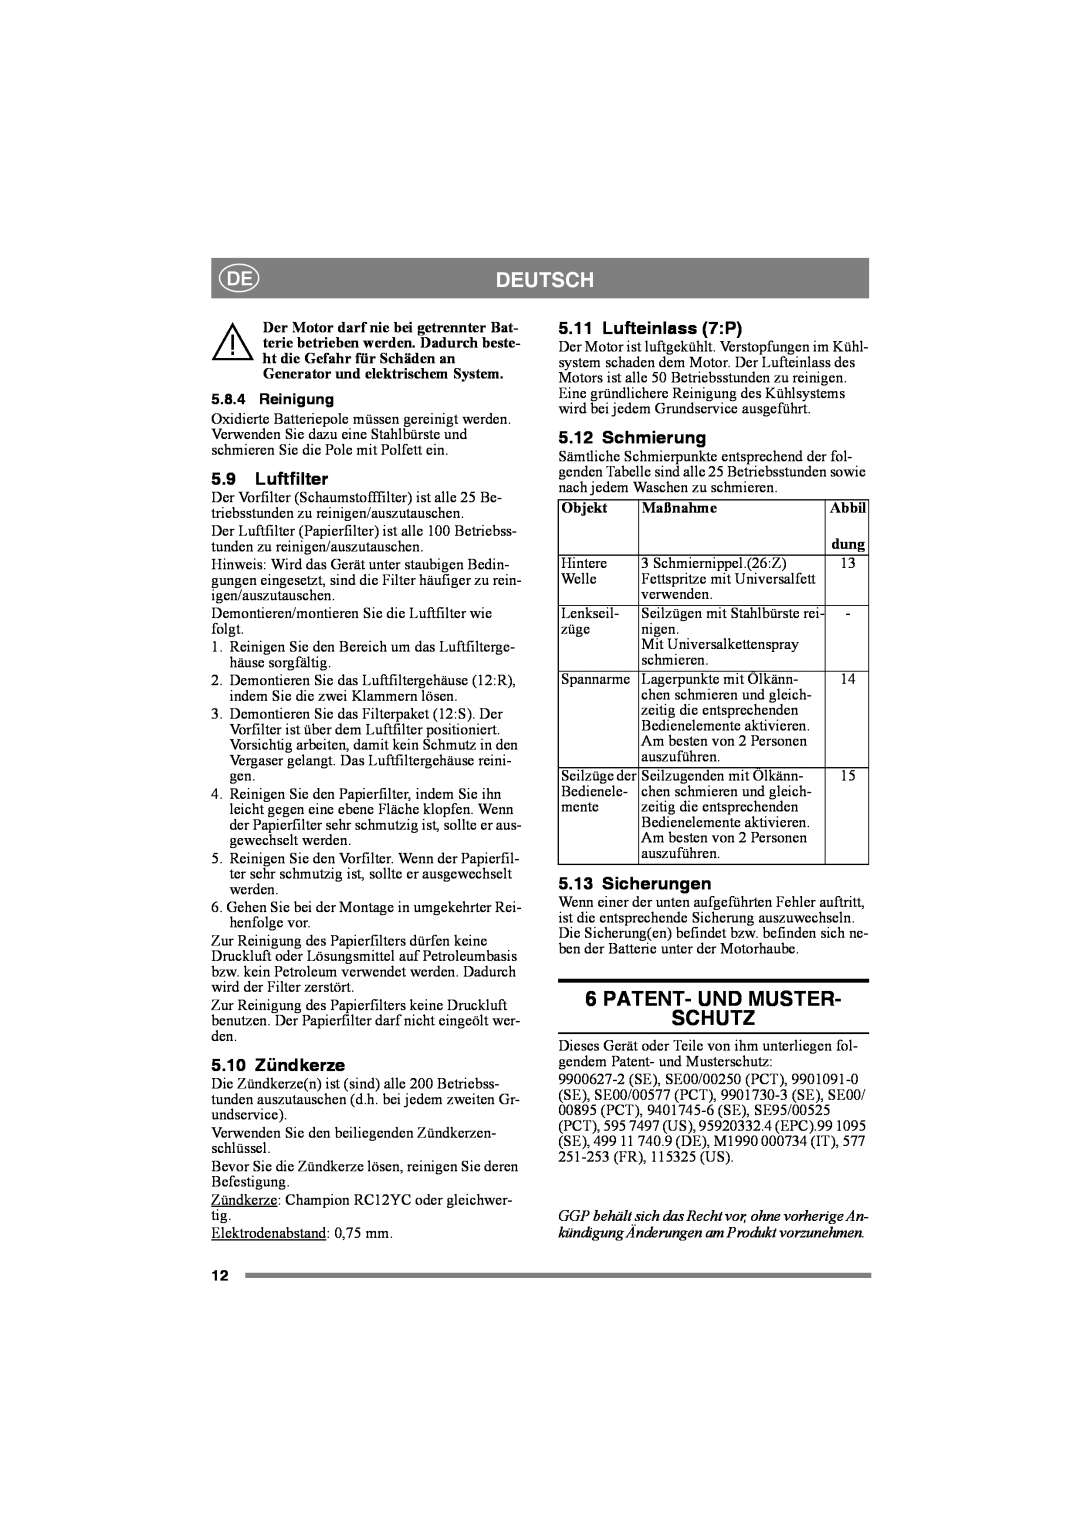 Stiga 8221-0034-80 Patent- Und Muster- Schutz, Luftfilter, 5.10 Zündkerze, Lufteinlass 7P, Schmierung, Sicherungen, Abbil 